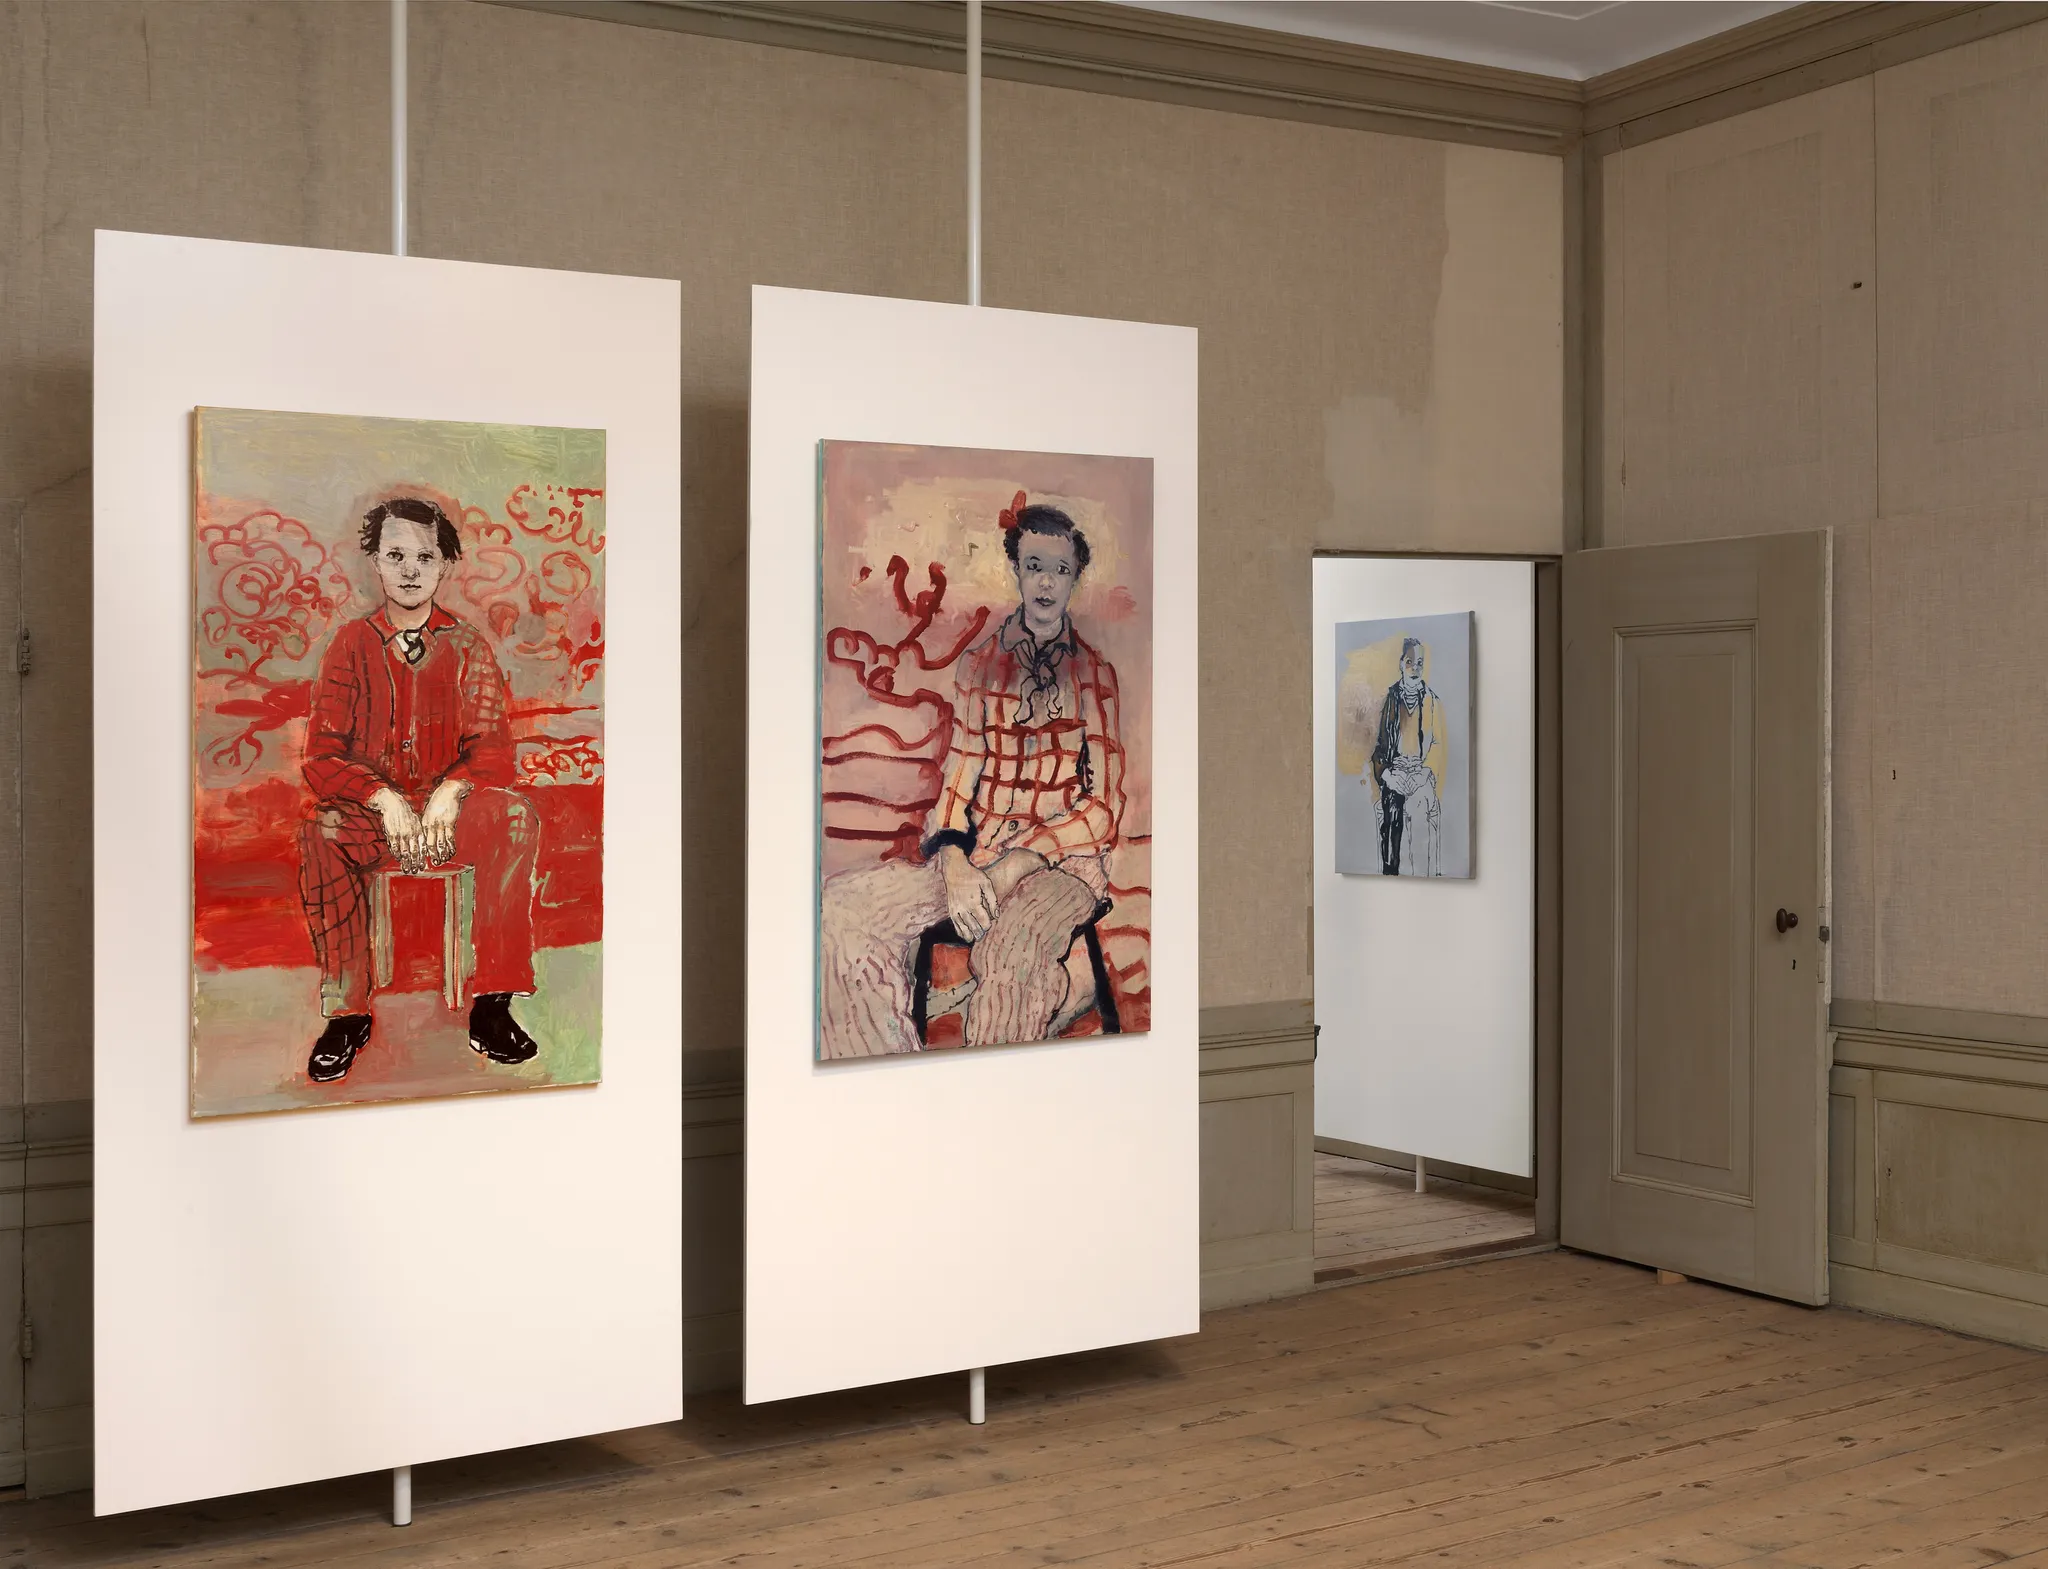 2 schilderijen met de portretten van een persoon zittend in rode tinten en, achter een deur, een derde schilderij van een persoon zittend in grijze tinten